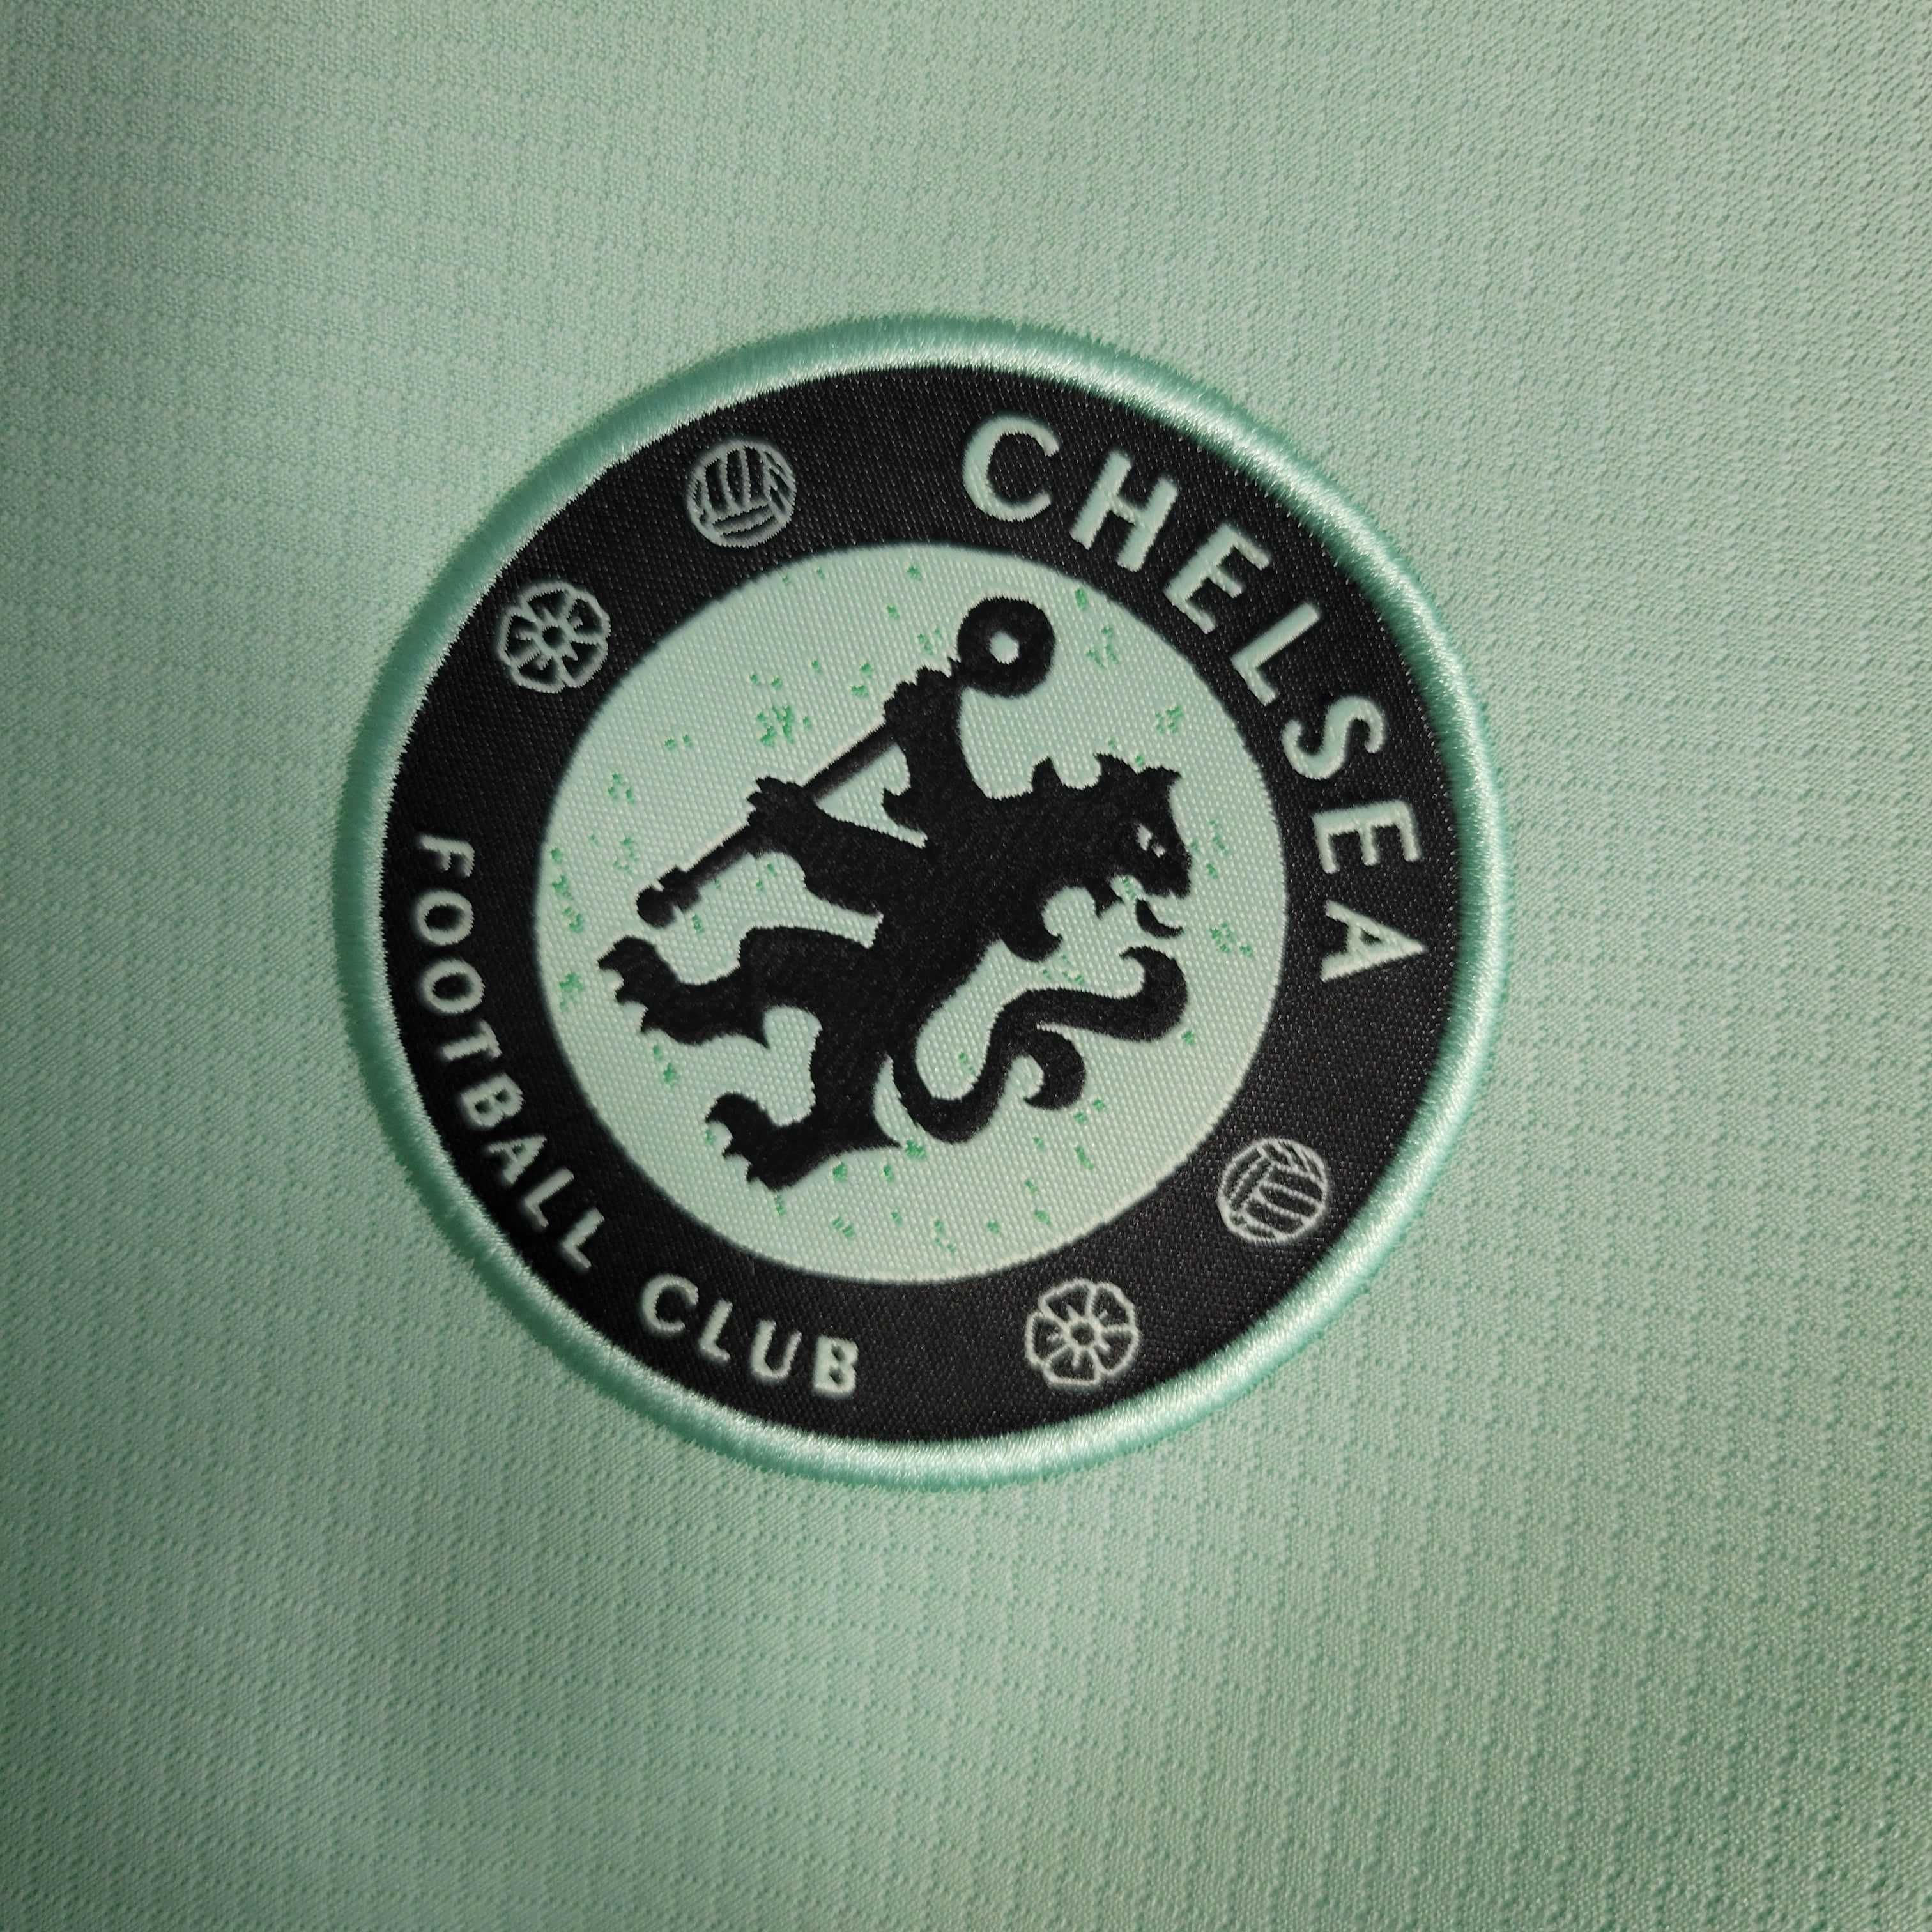 Chelsea Away Kit Jersey